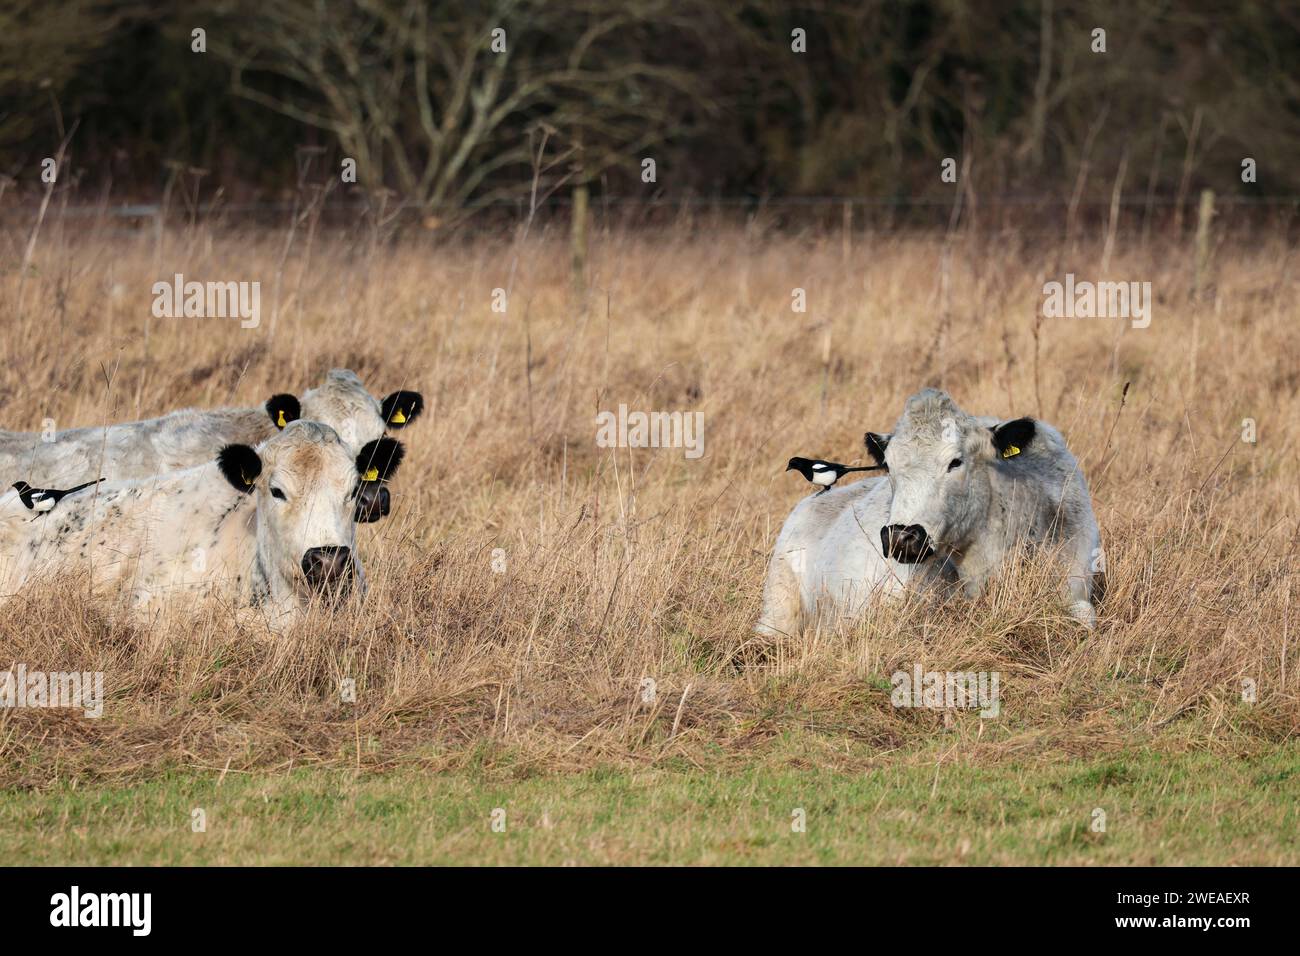 Les bovins blancs britanniques sans corne attirent le pic de boeuf britannique le pica pica pica, la végétation sèche de la saison hivernale litière pour les bovins au repos soignés par la pie Banque D'Images